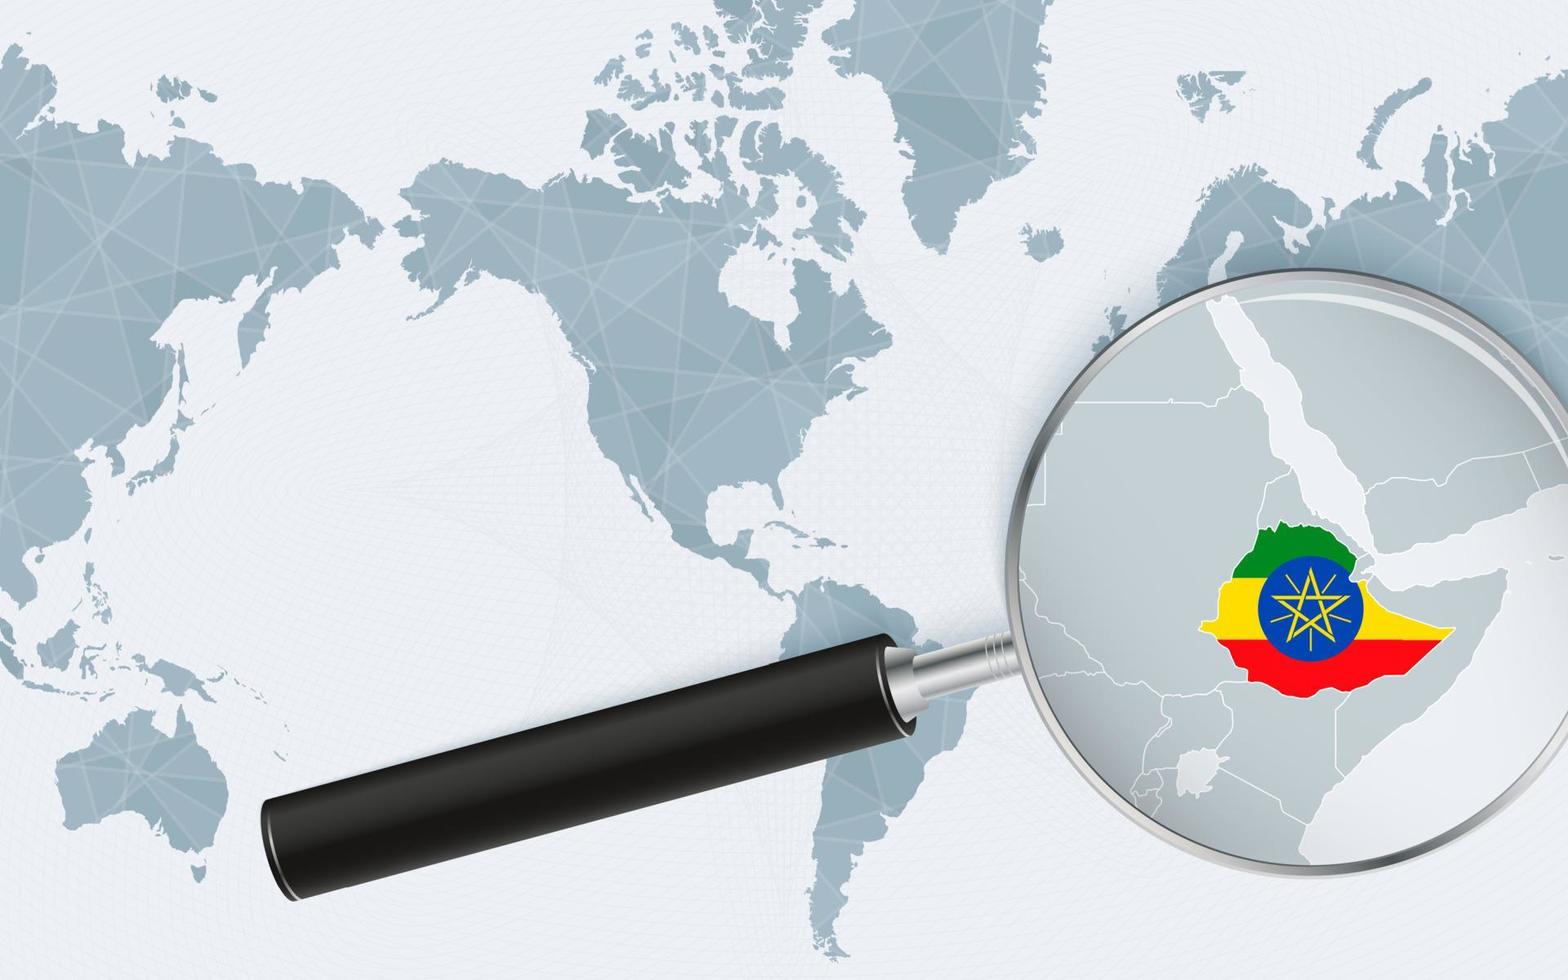 mapa ampliado de etiopía en el mapa mundial centrado en américa. mapa ampliado y bandera de etiopía. vector